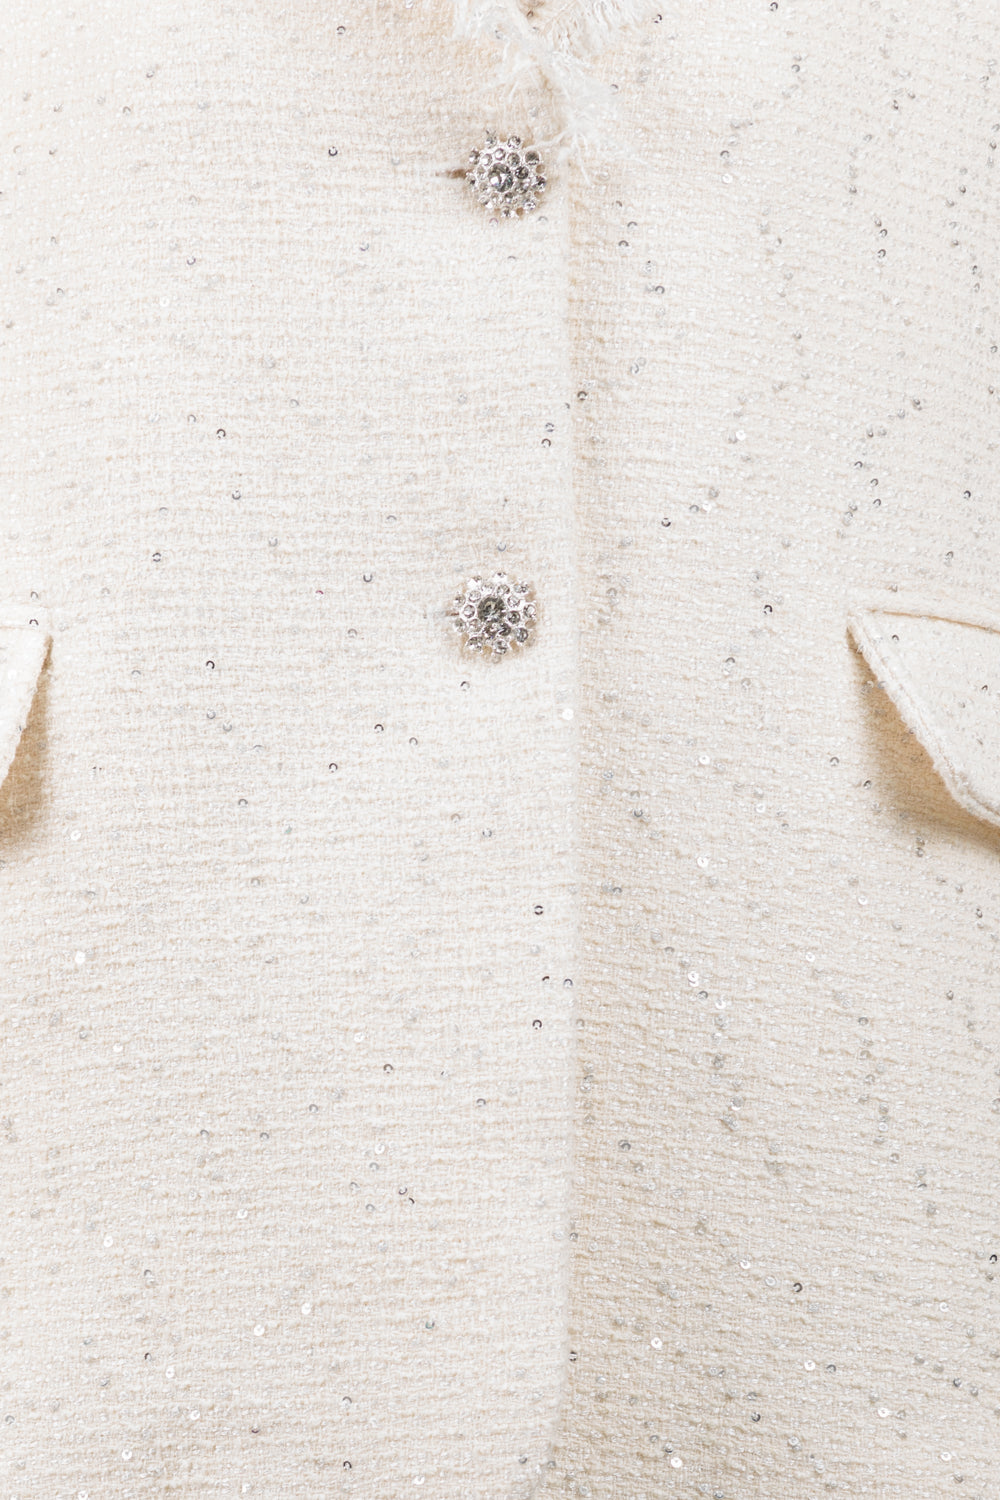 Tensione in - Giacca micro paillettes bottoni gioiello Art. 33135